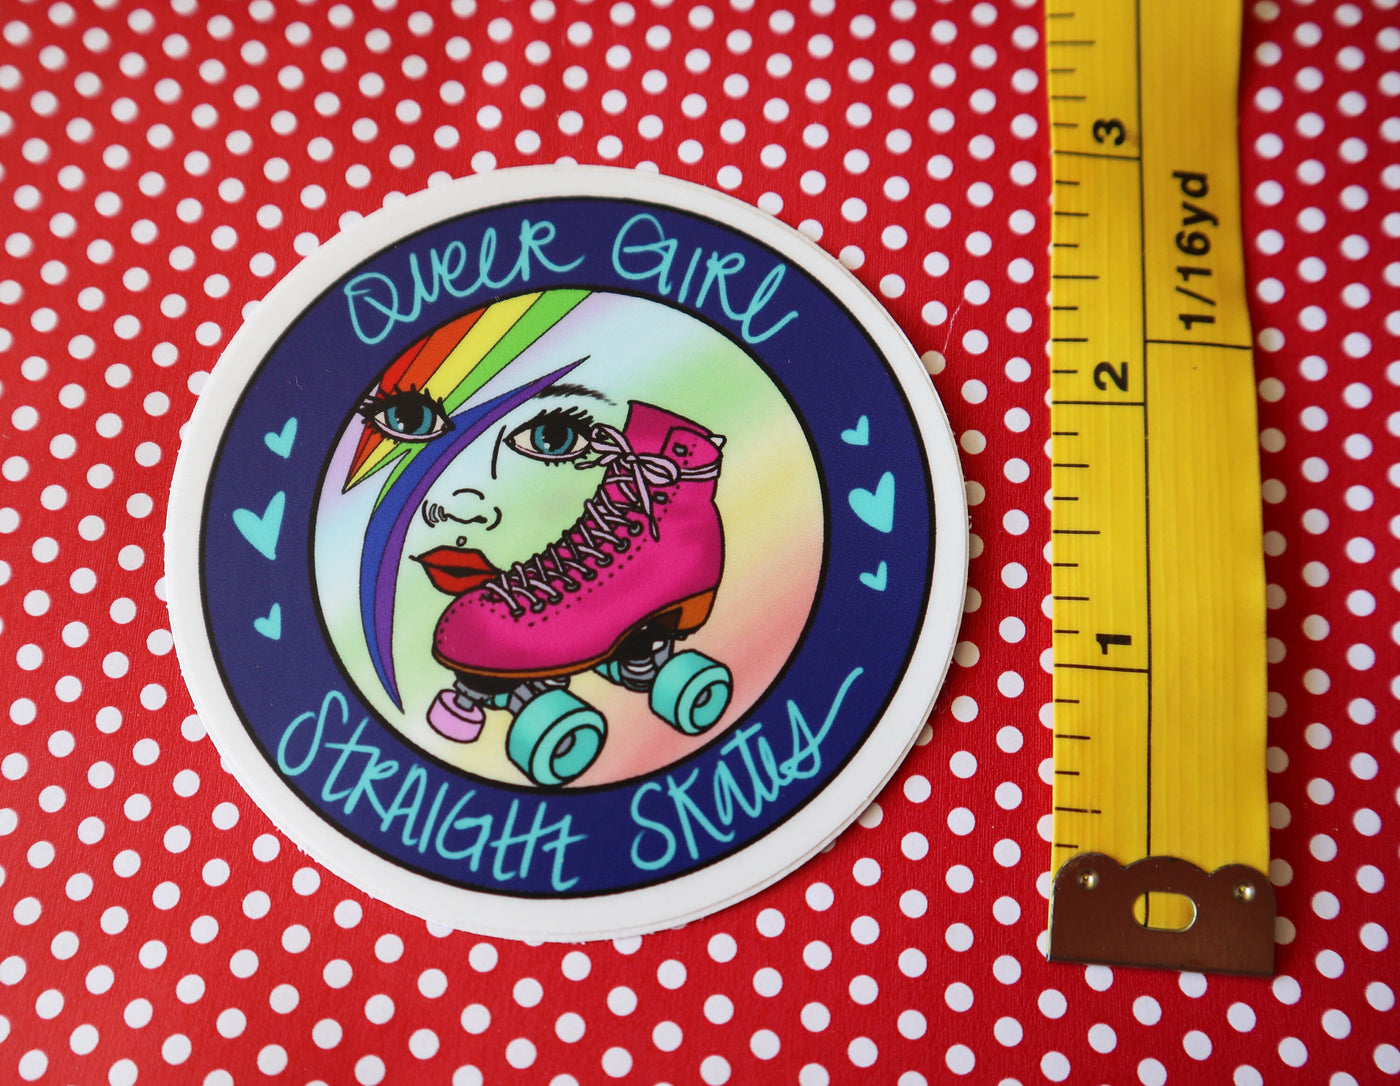 Queer Girl Straight Skates LOGO sticker